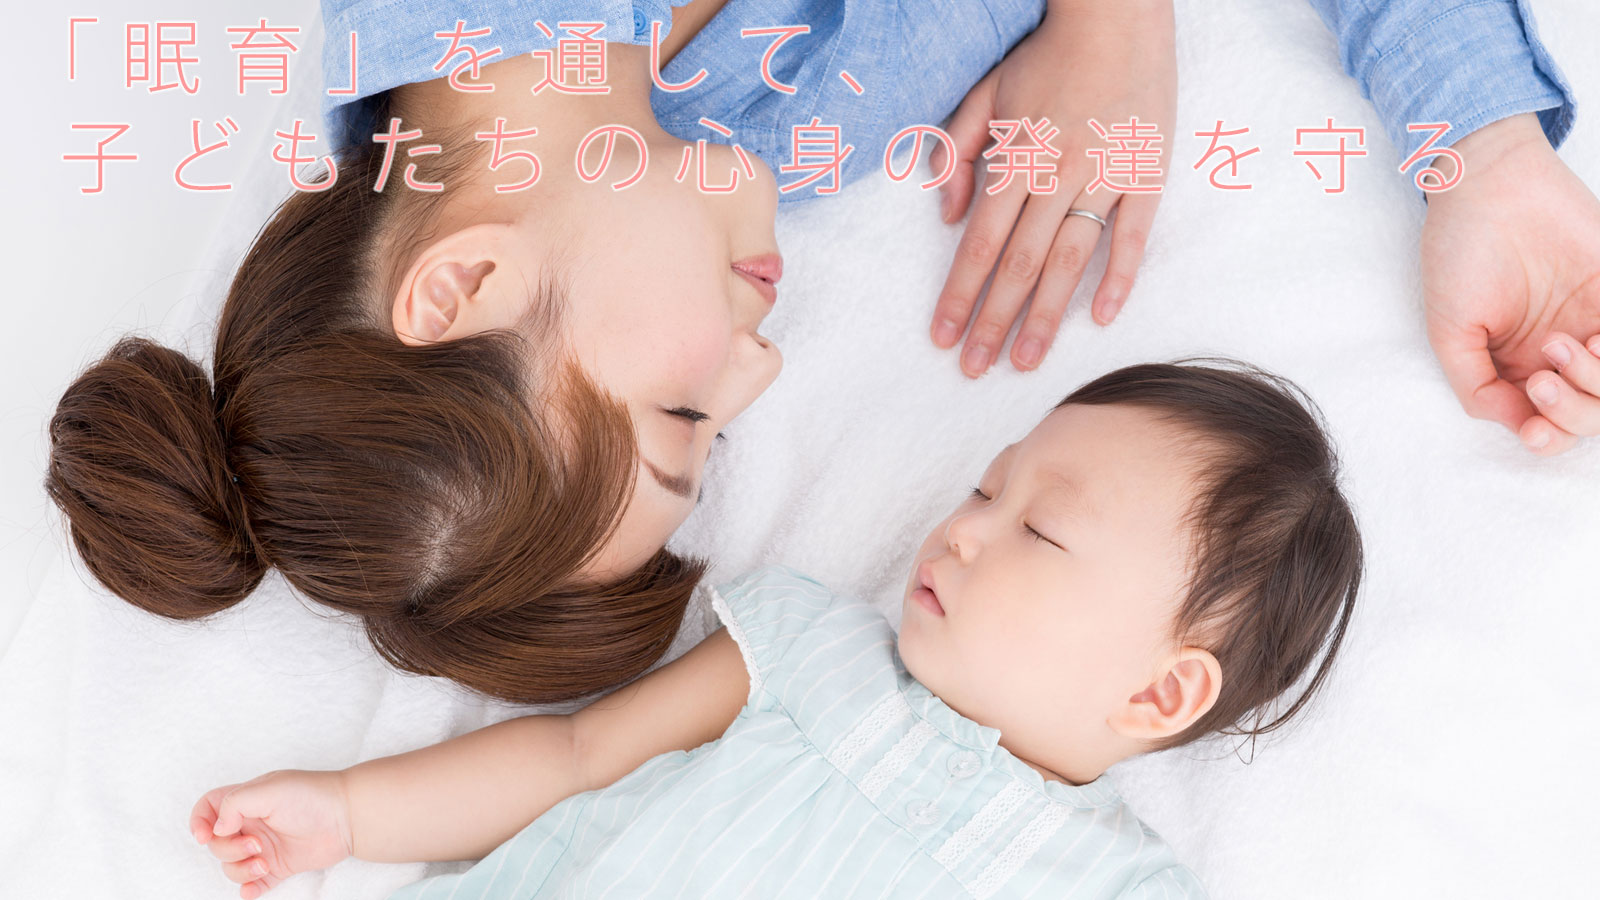 「眠育」を通して、子どもたちの心身の発達を守る